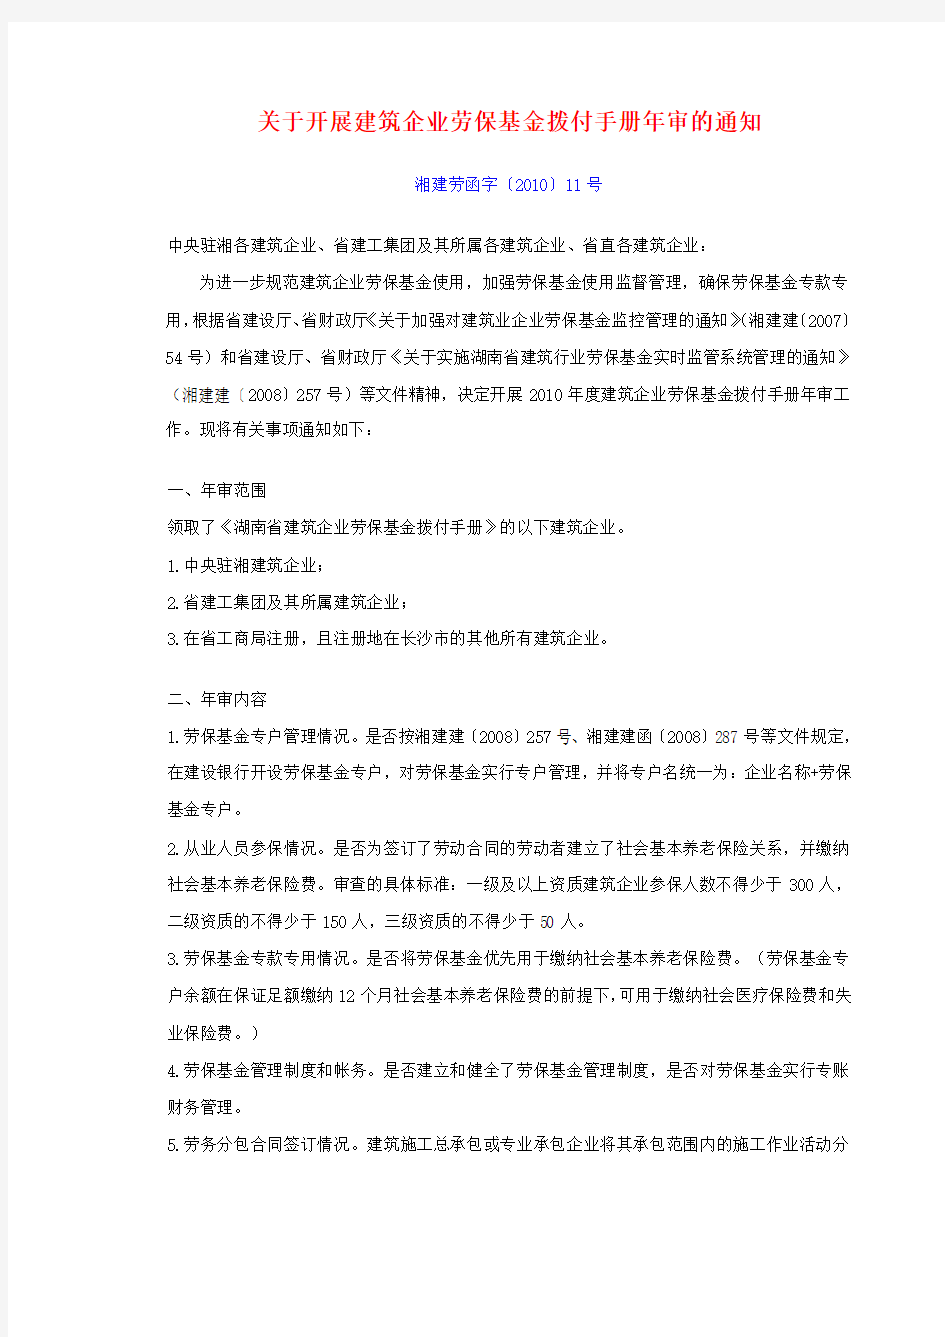 湘建劳函(2010)11号 关于开展建筑企业劳保基金拨付手册年审的通知